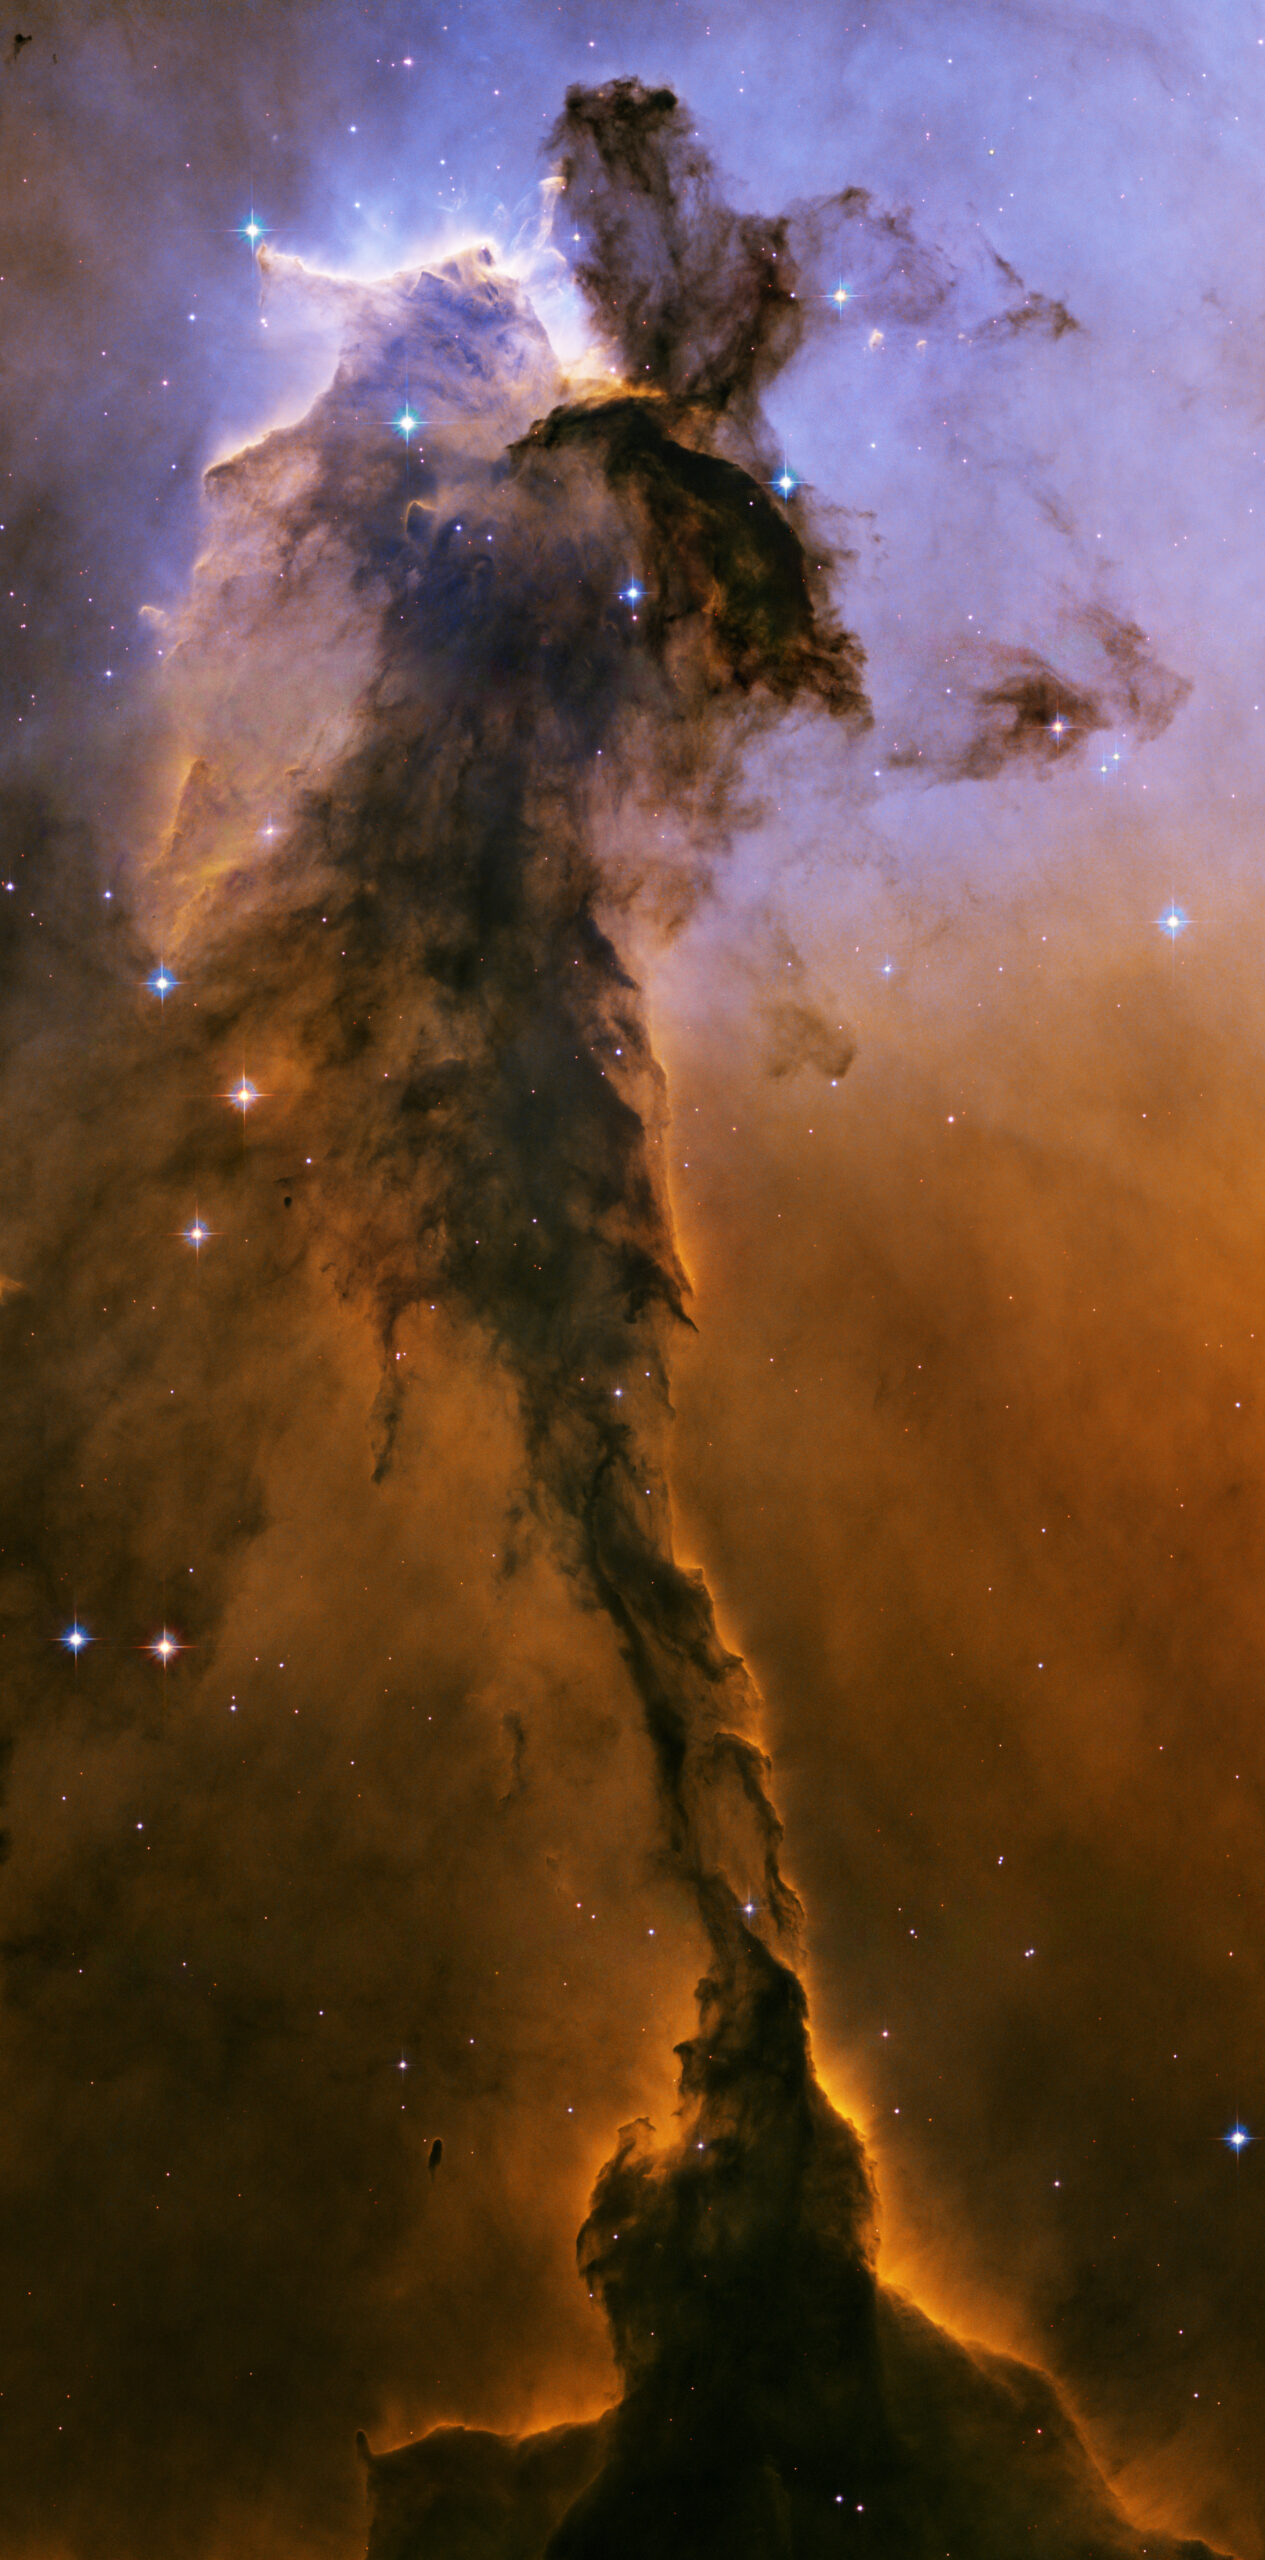 M16 ，鹰星云内的恒星尖塔影像。